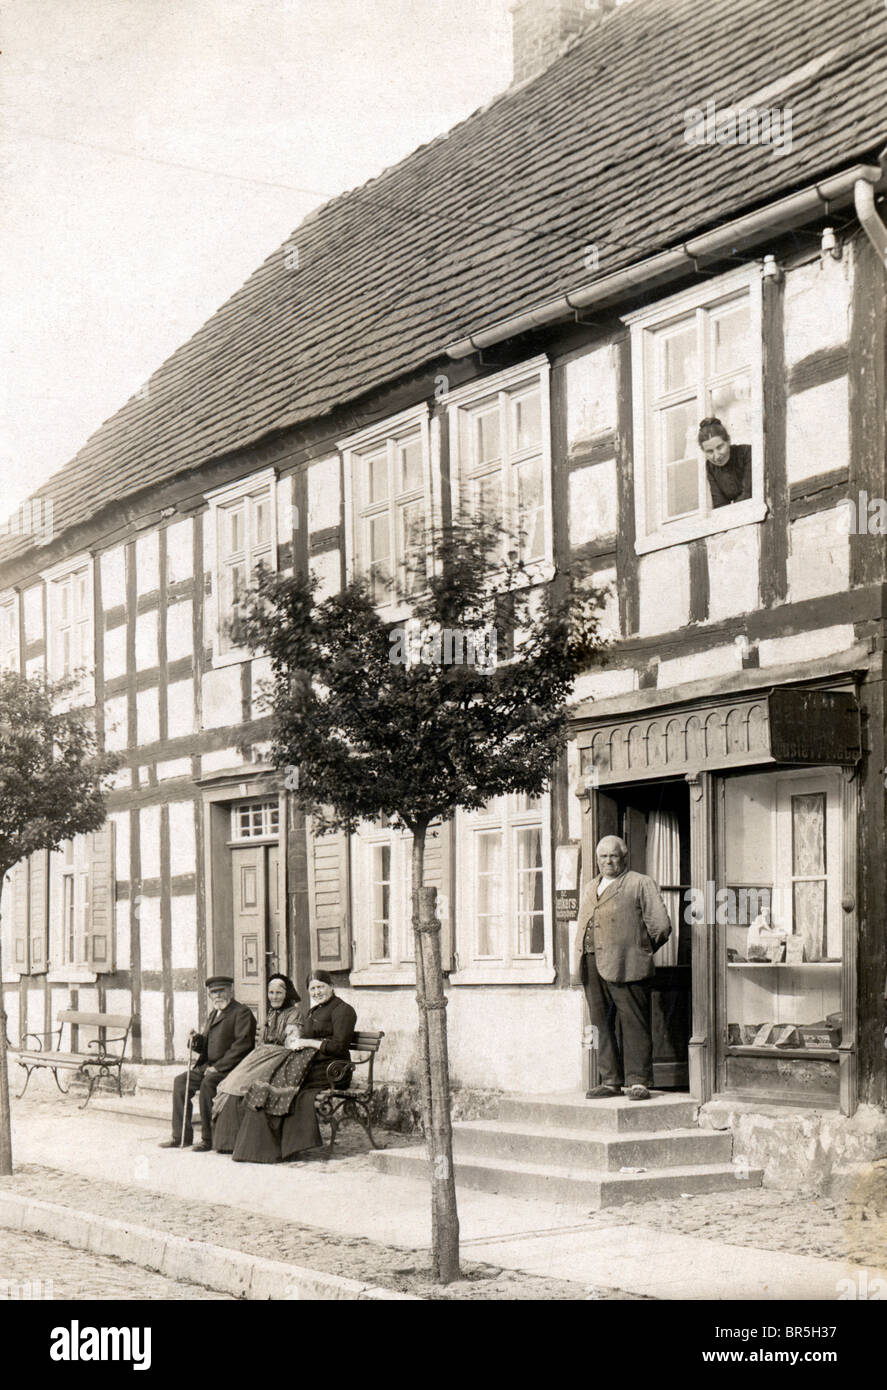 Fotografia storica, casa in legno e muratura, villaggio idillio, intorno al 1910 Foto Stock